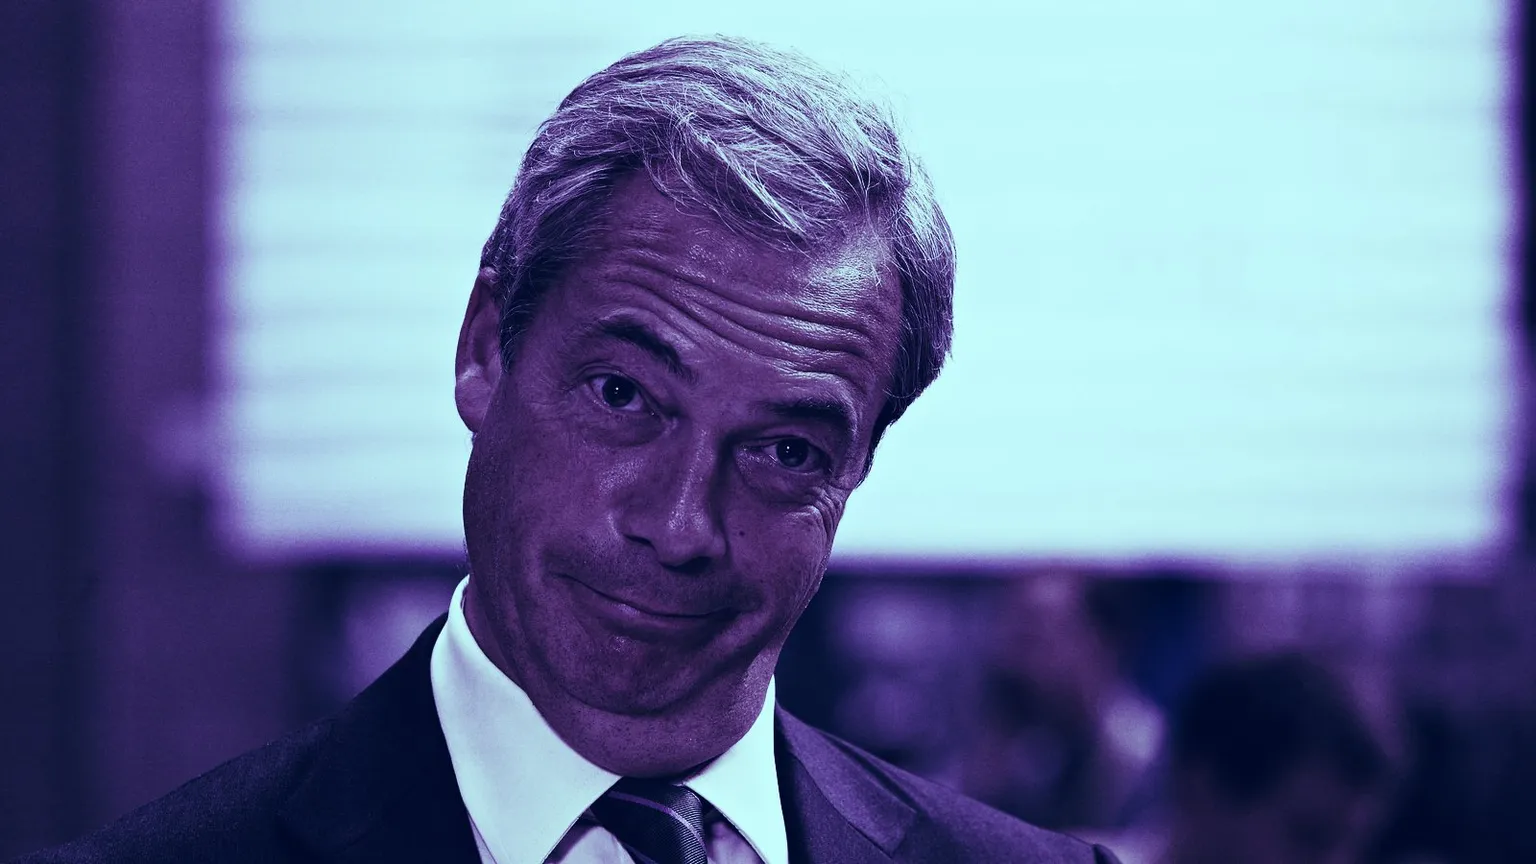 Nigel Farage. Image: Shutterstock